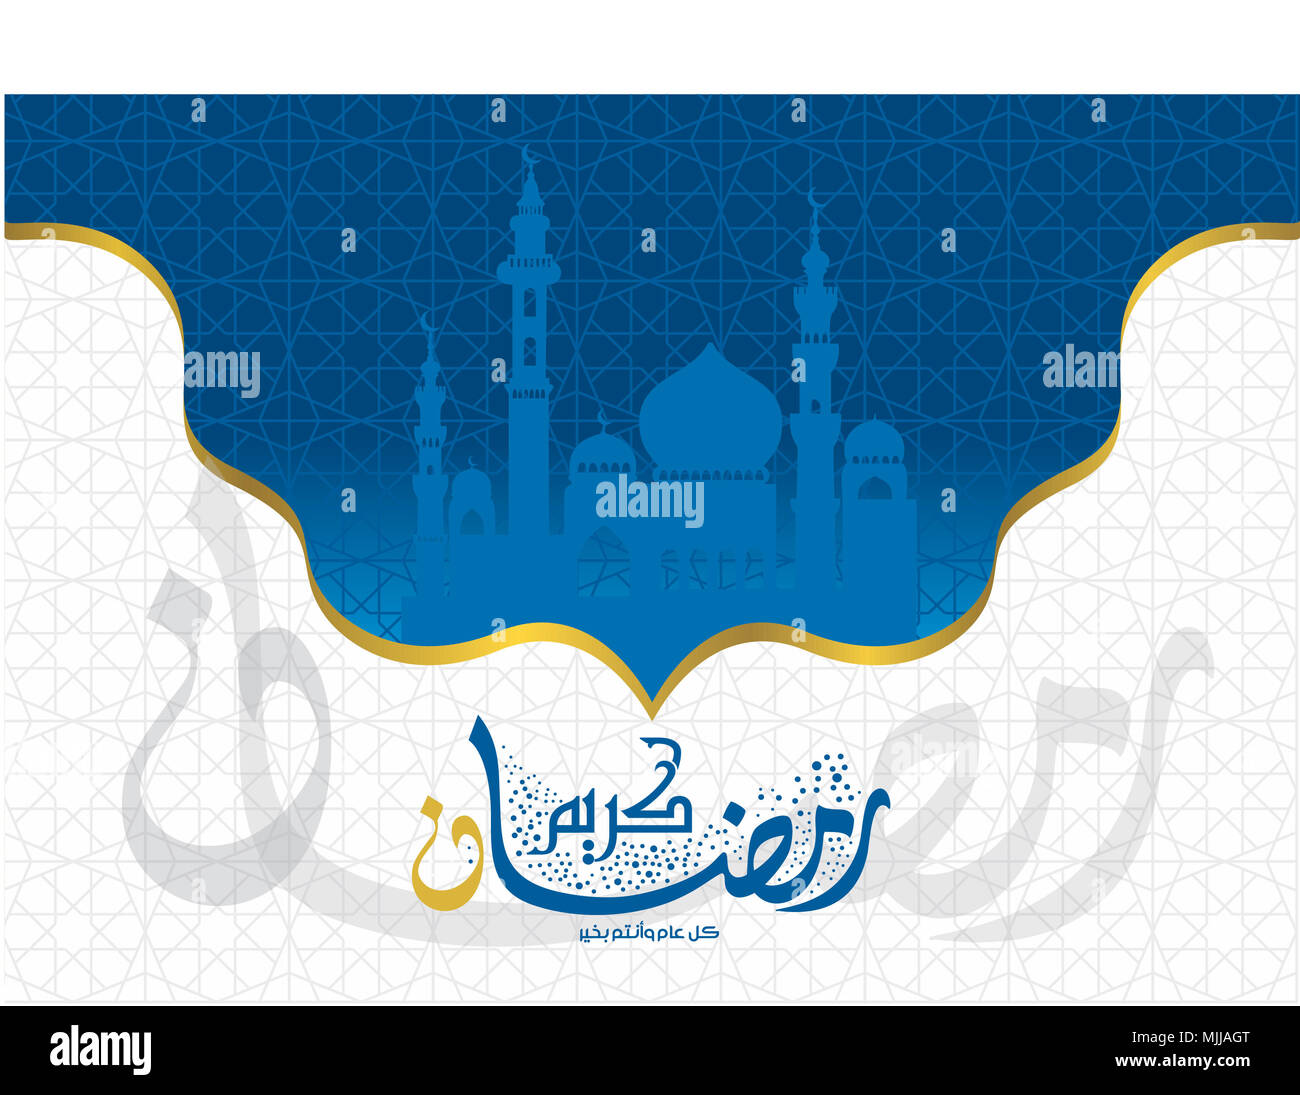 Ramadan greeting card Stock Photo